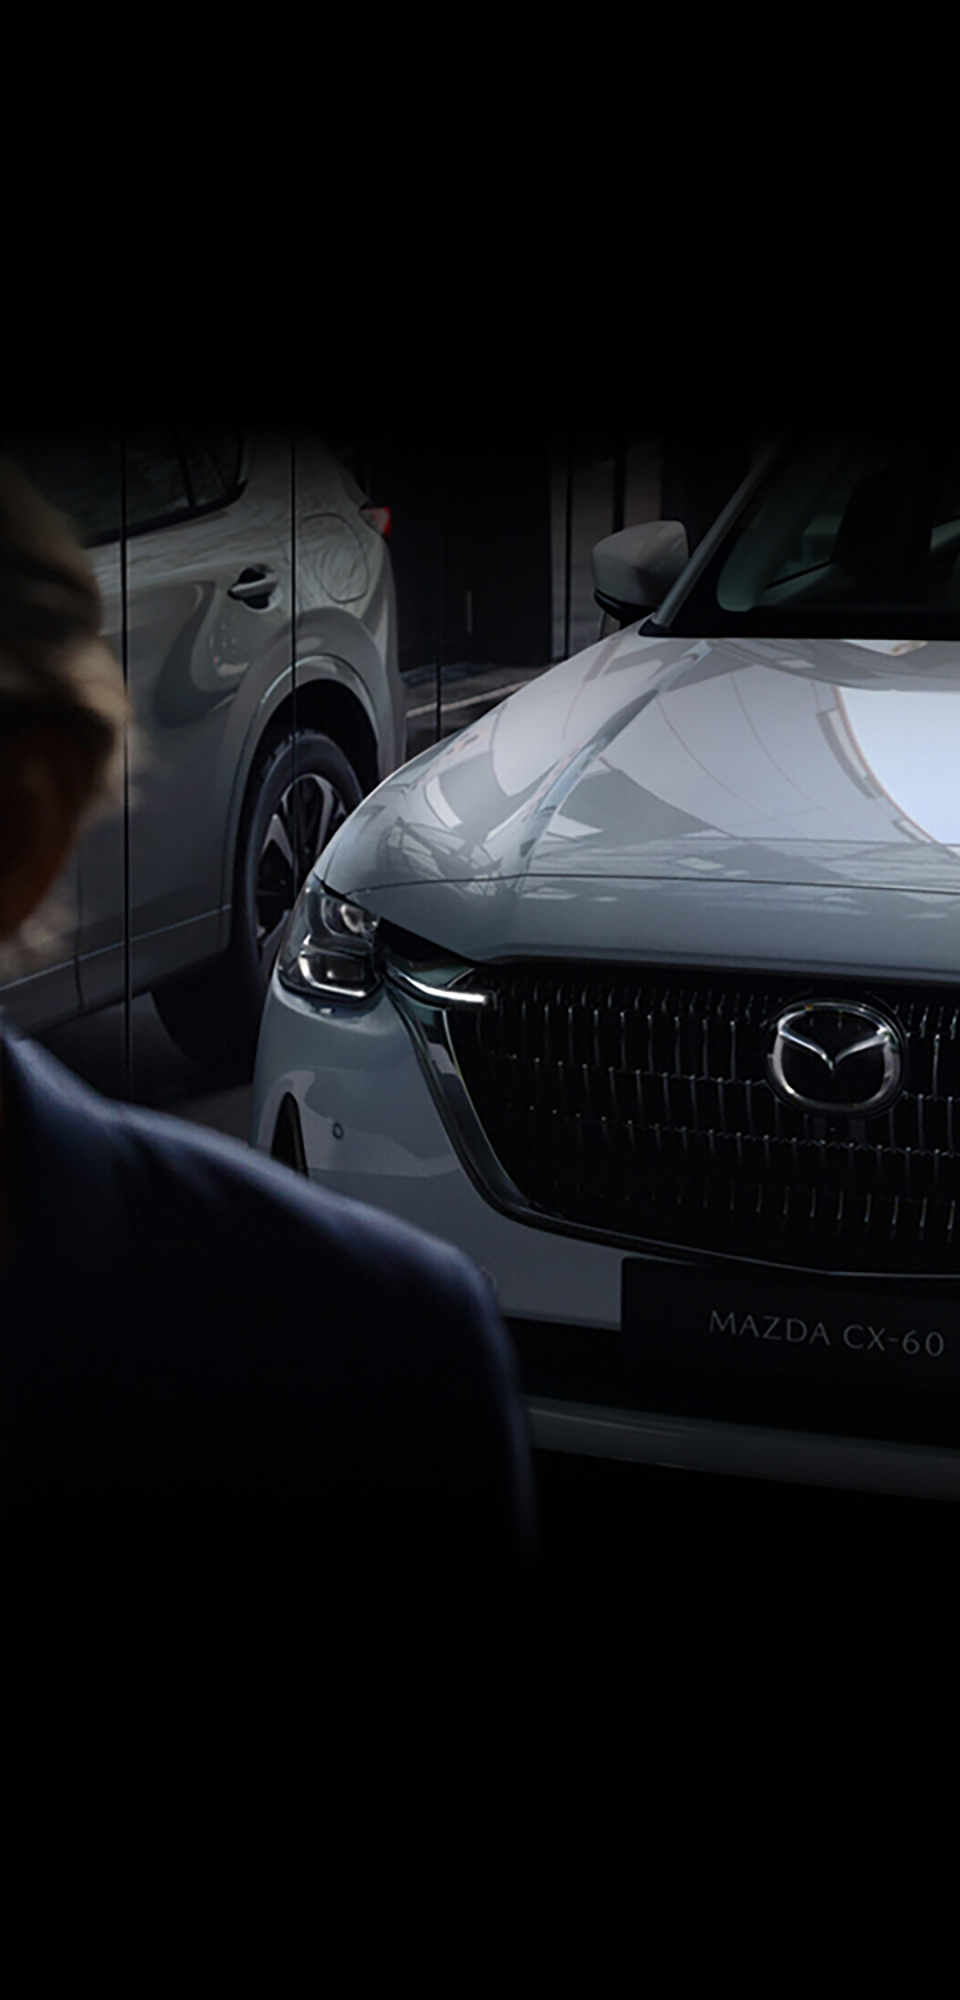 El nuevo SUV híbrido enchufable Mazda CX-60 visto por delante aparcado reflejado en el cristal de una ventana